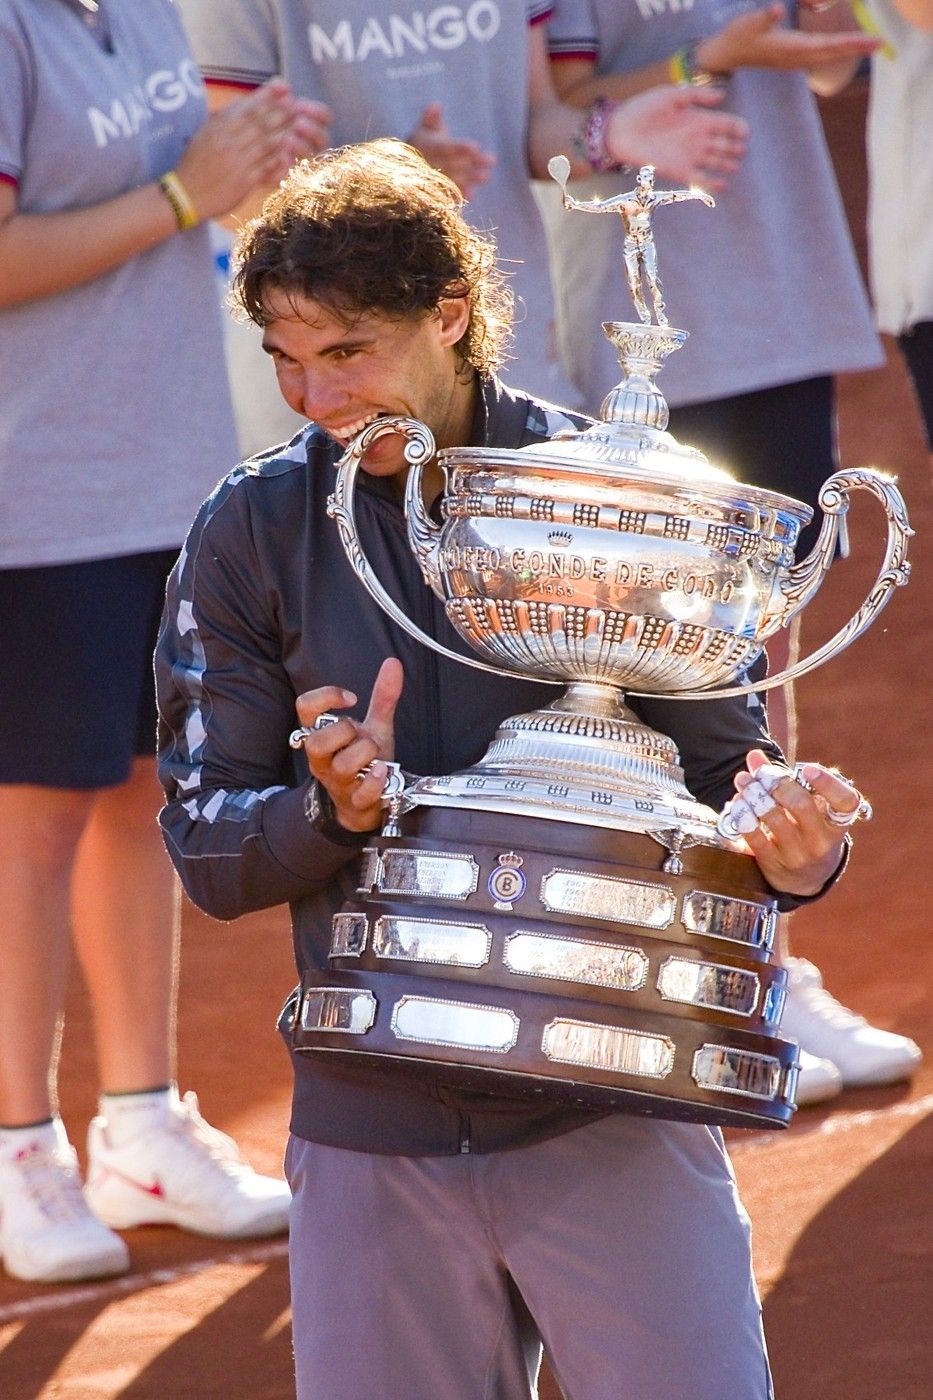 2012 - O jediný set připravil Nadala až ve finále Djokovič, své soupeře jinak drtil rodák z Mallorky až neskutečným způsobem. Ferrer na něj v semifinále uhrál pouhých pět gamů